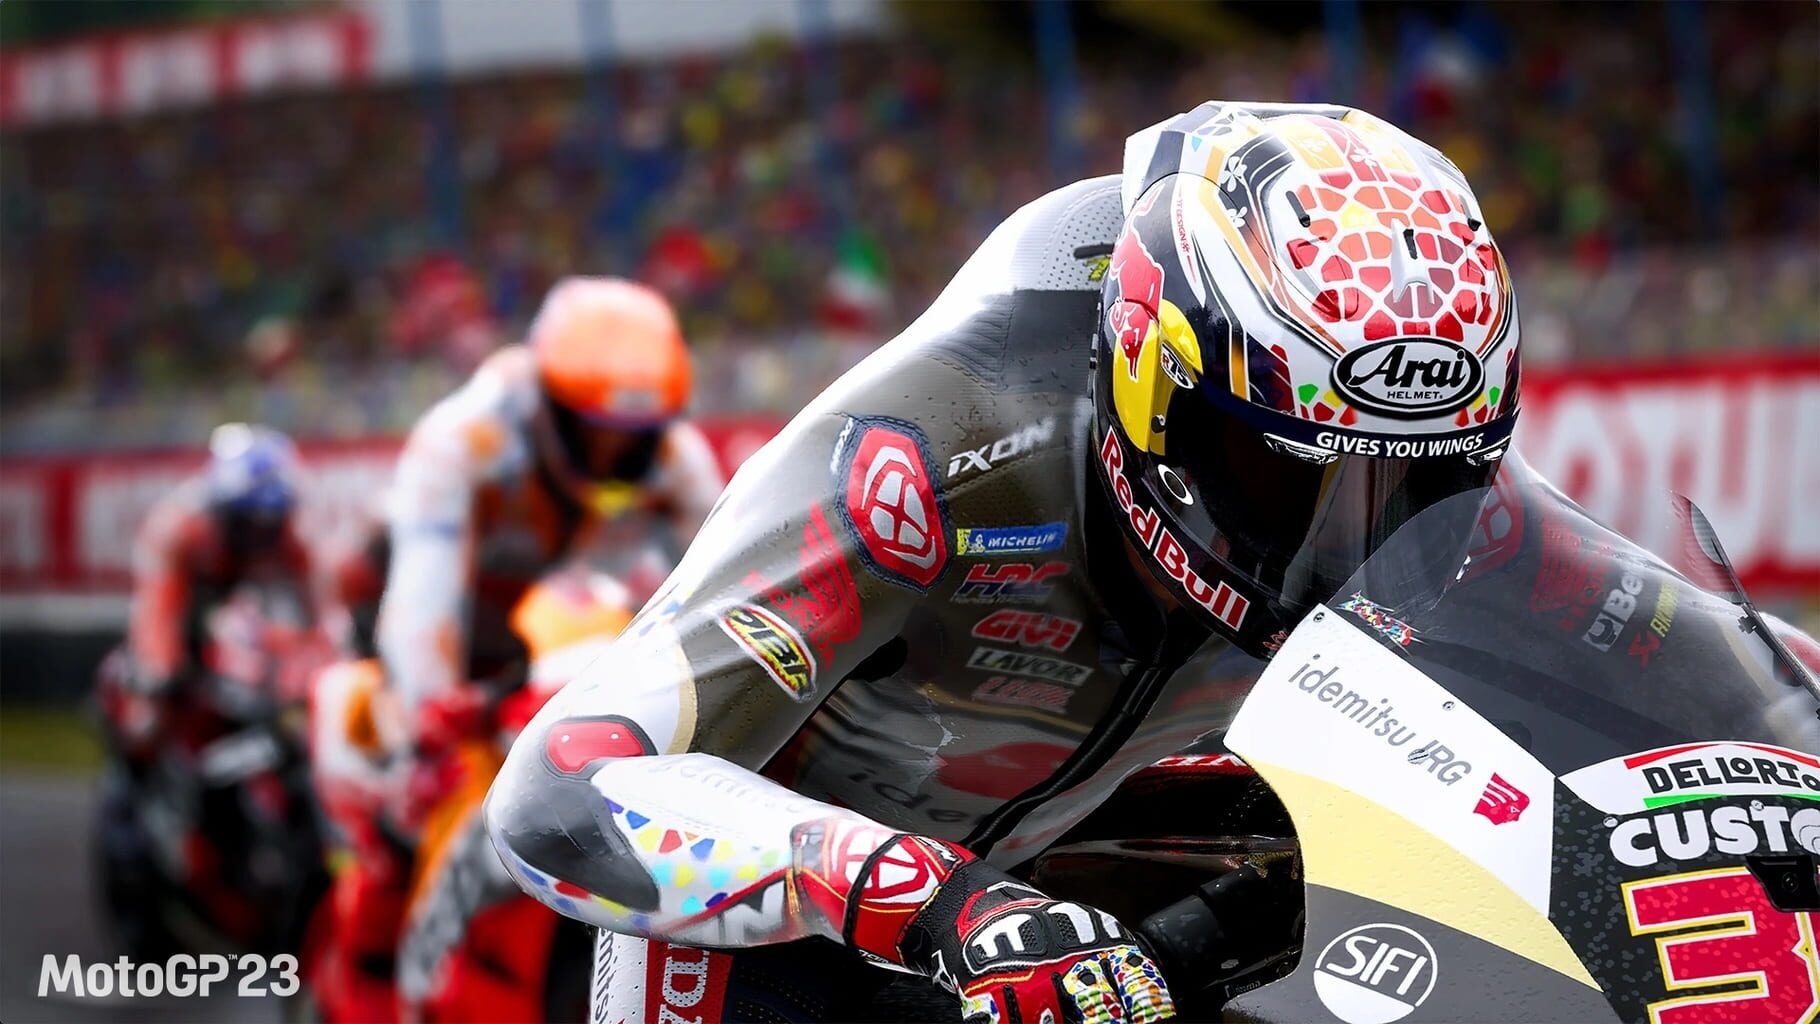 MotoGP 23 screenshots